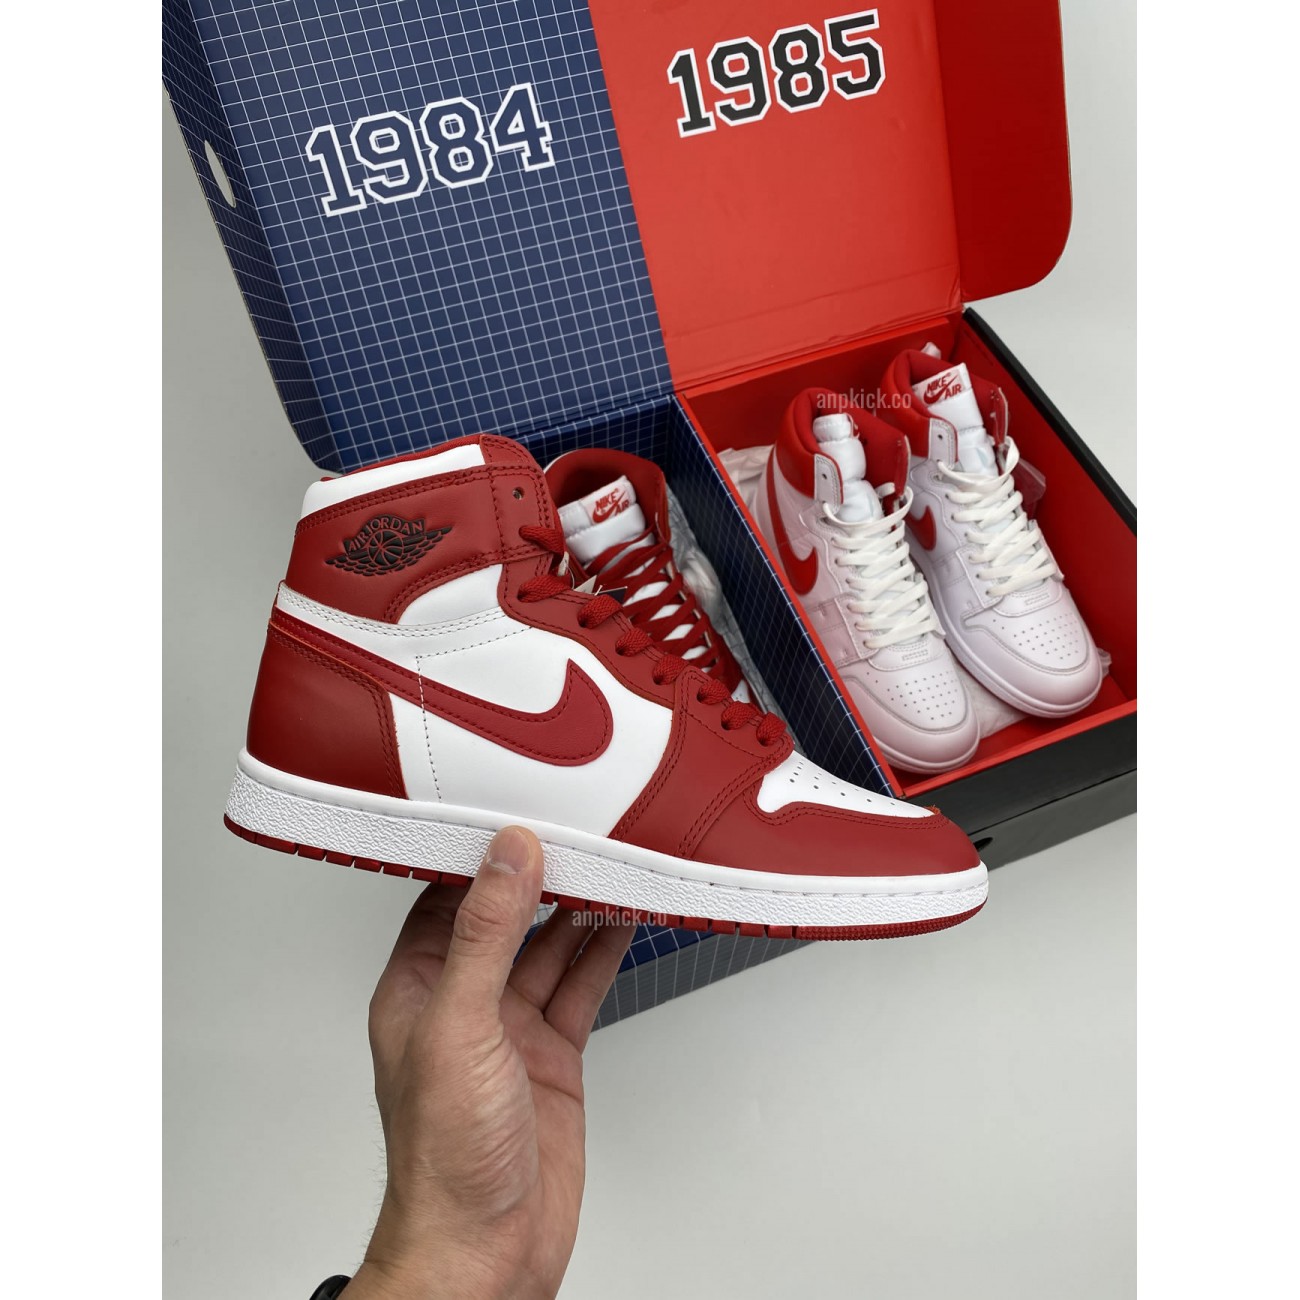 Nike/Air Jordan 1 1984 And 1985 "New Beginnings" Pack CT6252-900